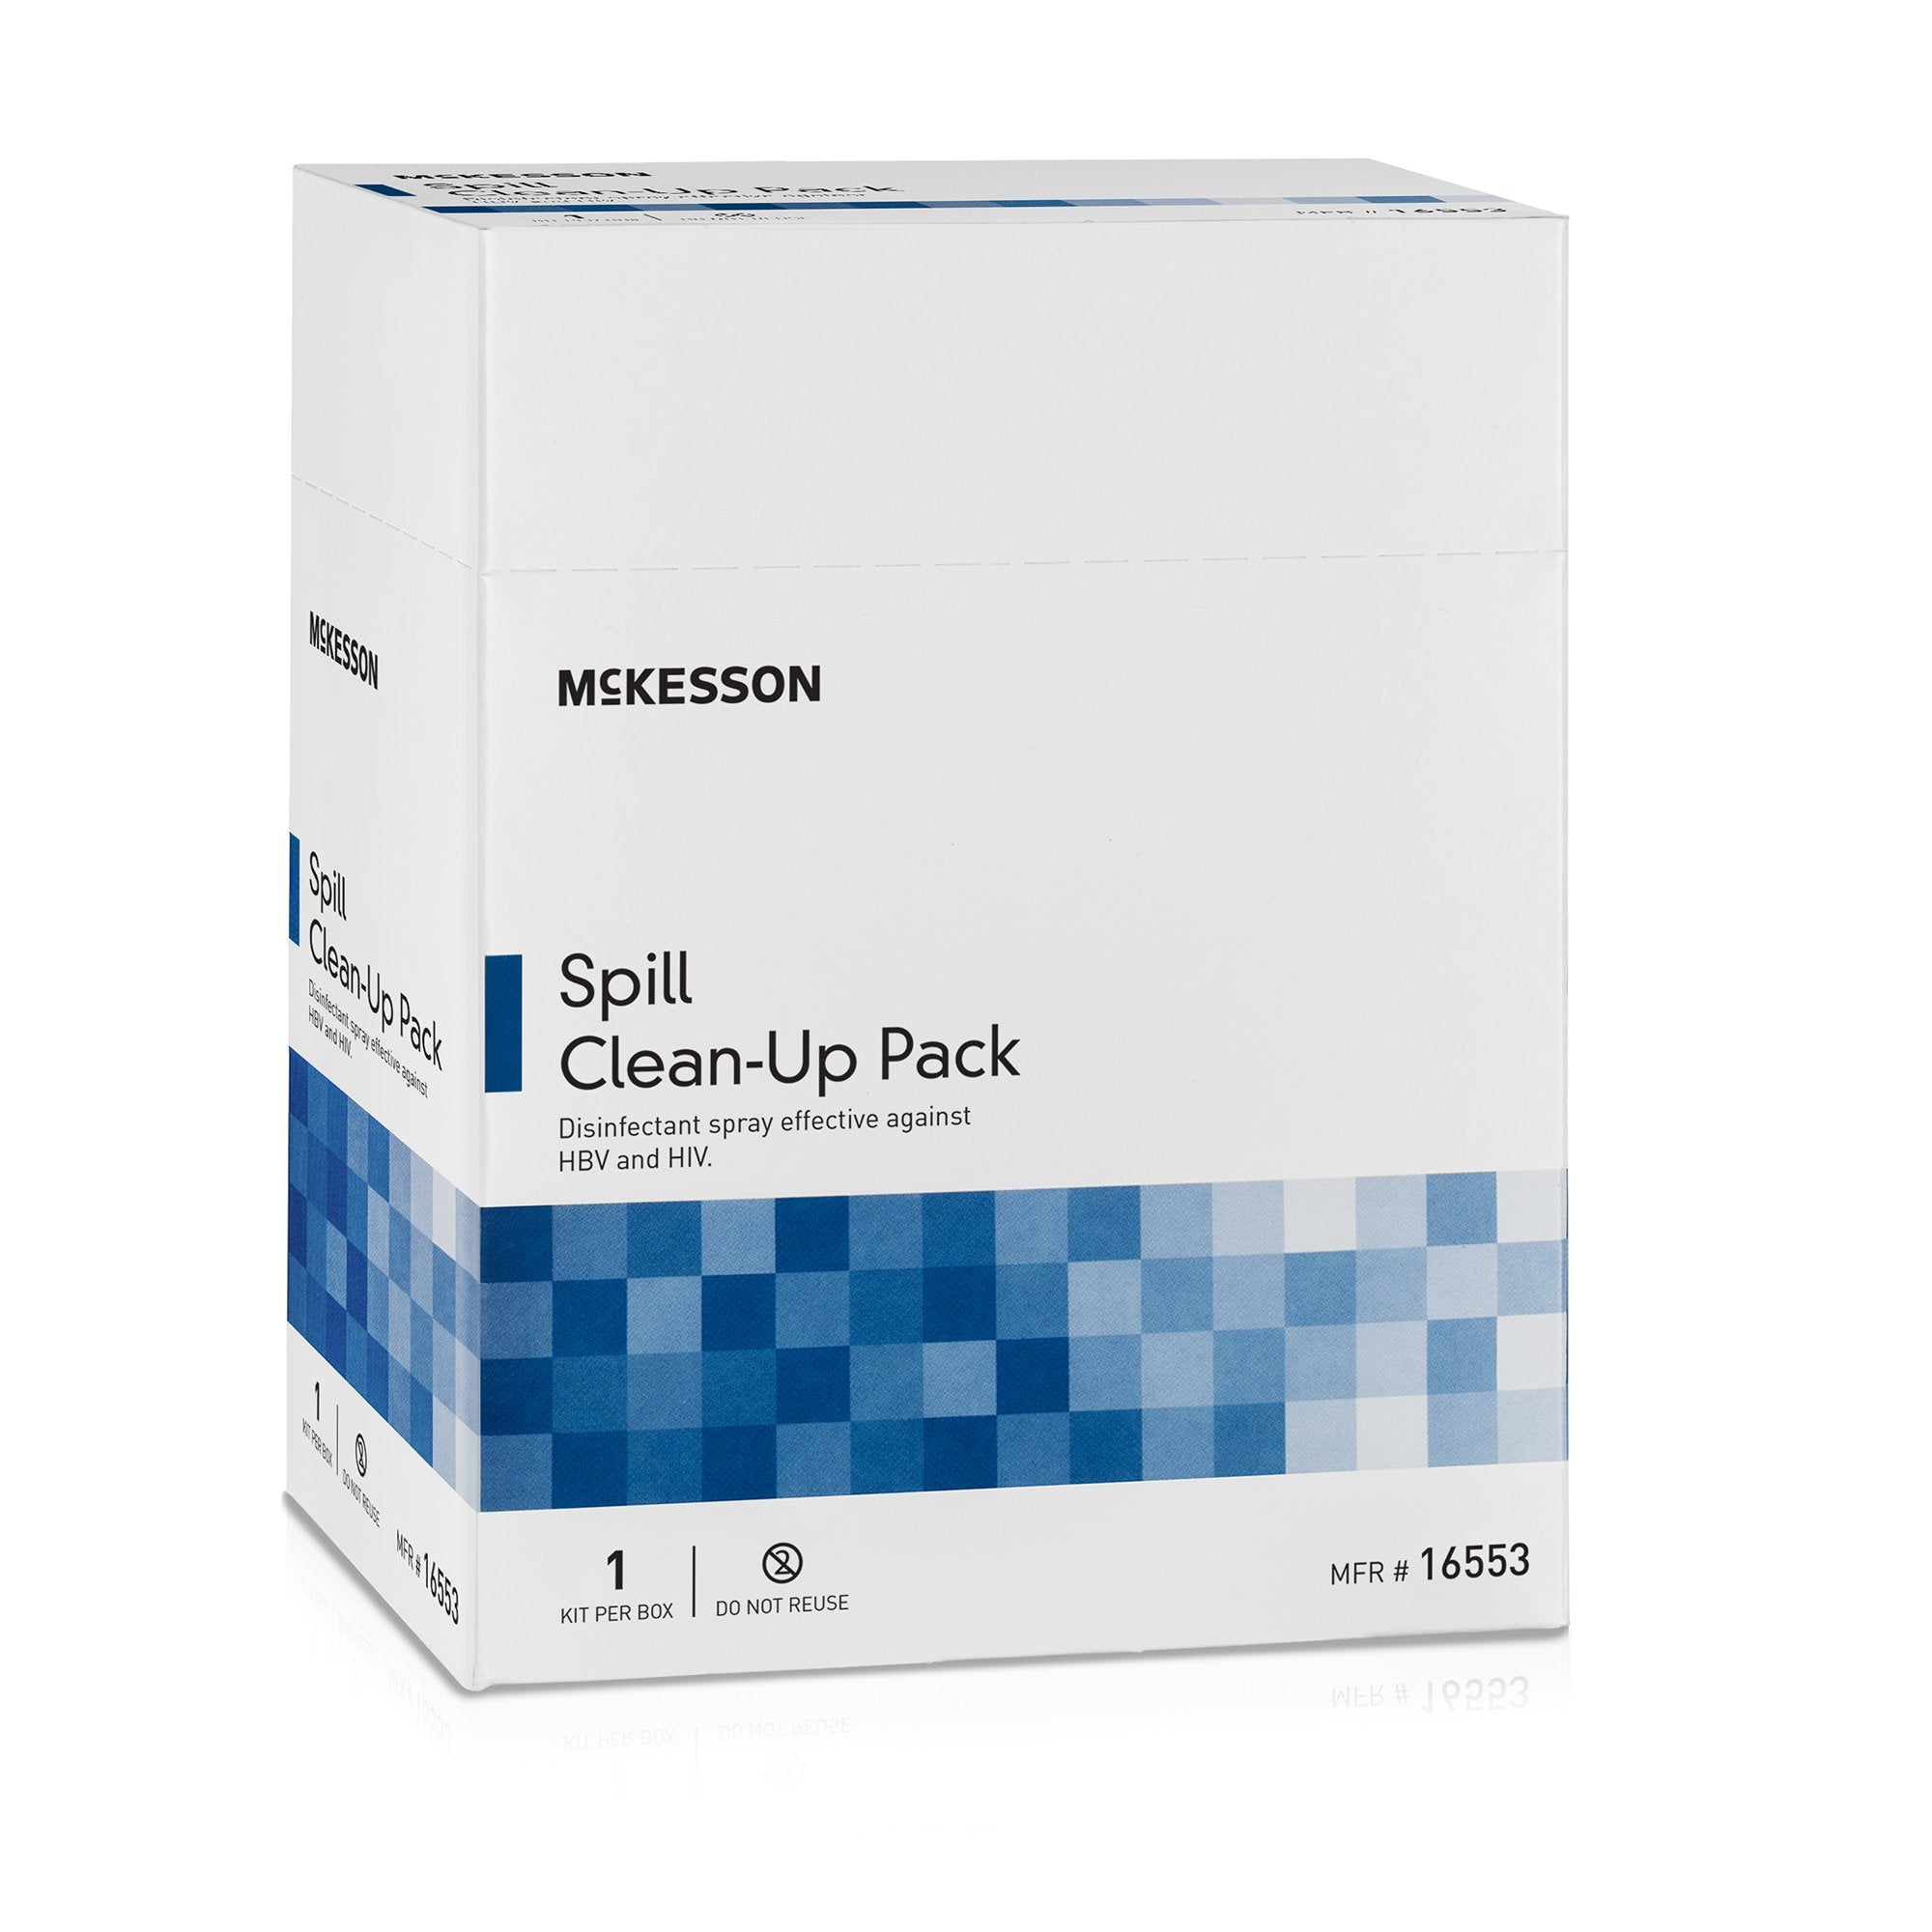 Bloodborne Pathogen Spill Clean-Up Pack McKesson